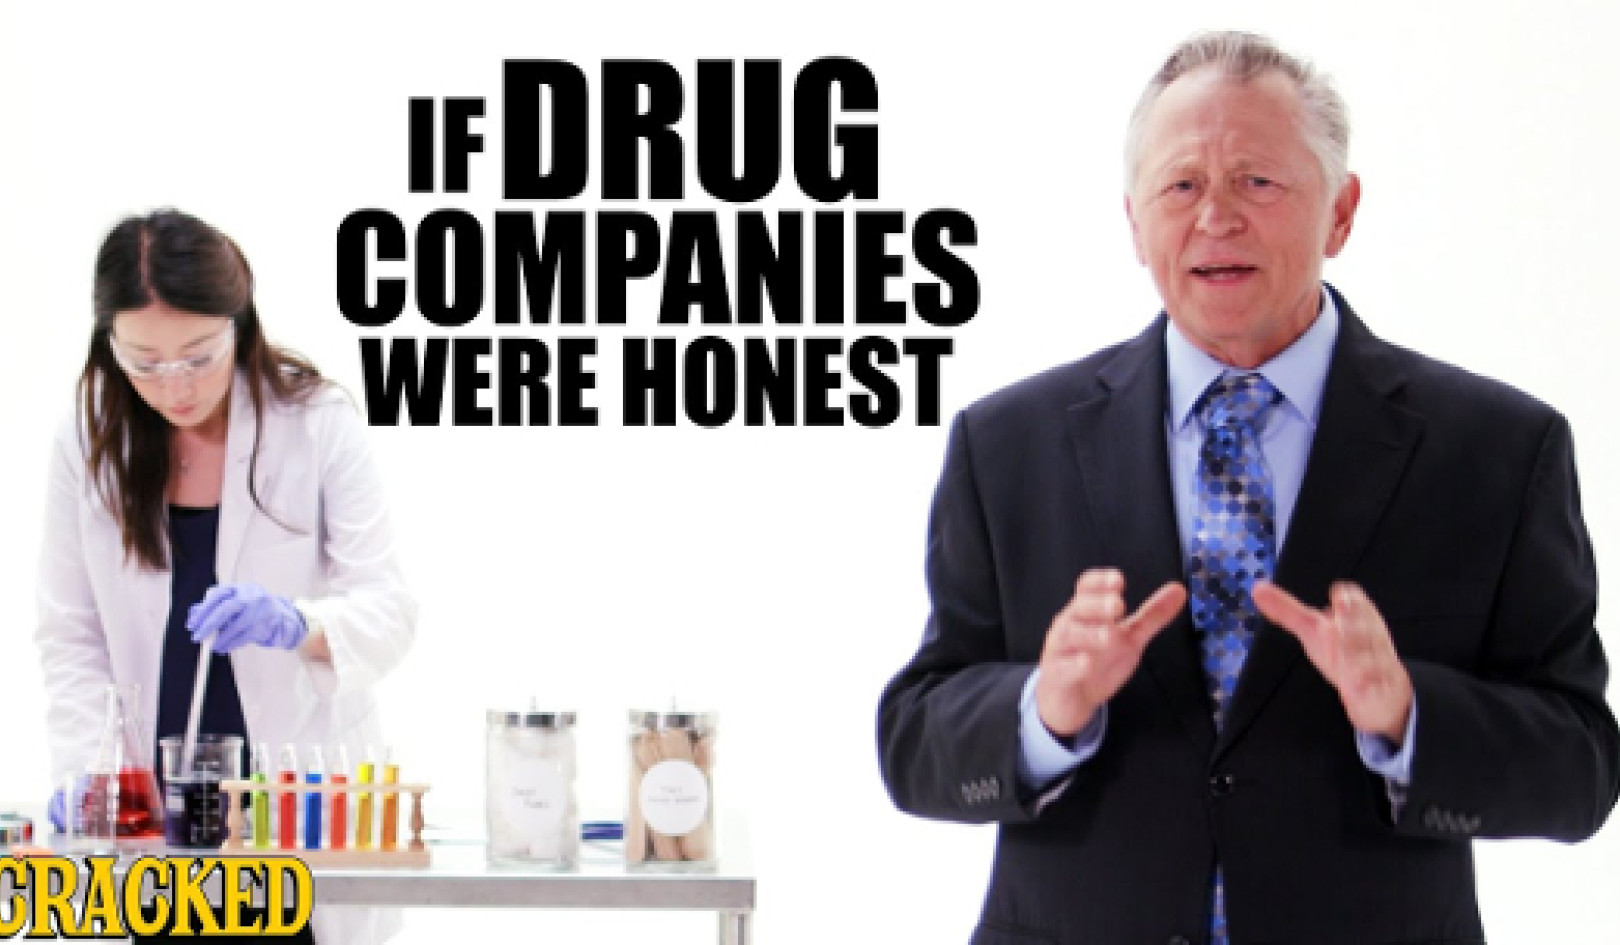 دواسازی کی صنعت کس طرح منشیات کی قیمتوں میں اصلاحات کو کمزور کرنے کے لیے غلط معلومات کا استعمال کرتی ہے۔